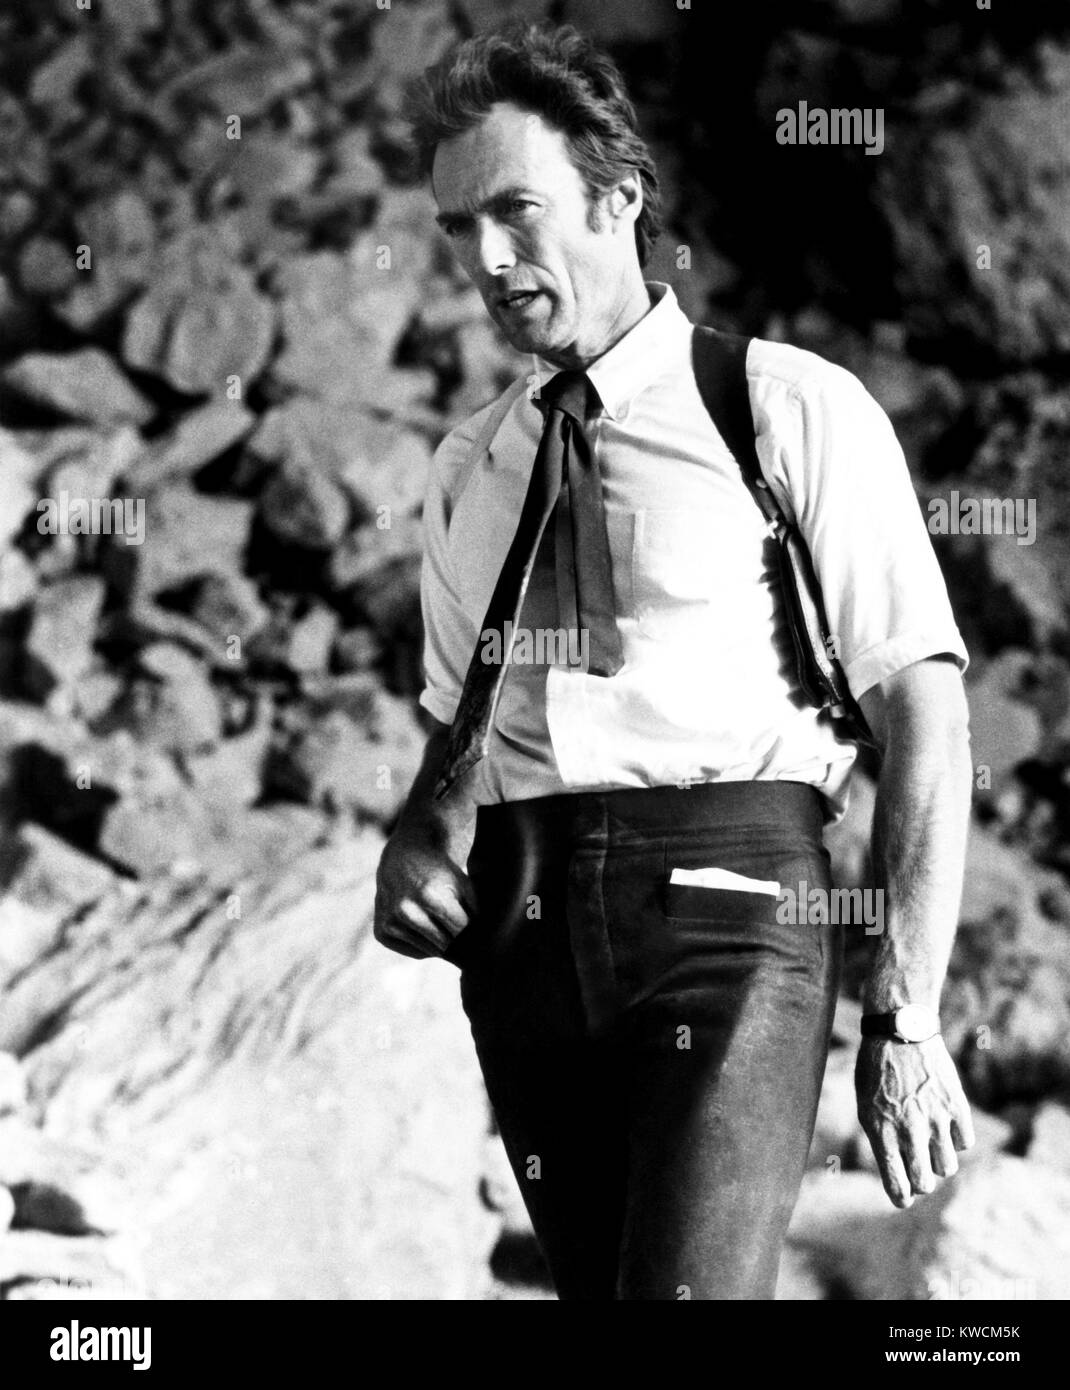 El guante, Clint Eastwood, 1977 Foto de stock